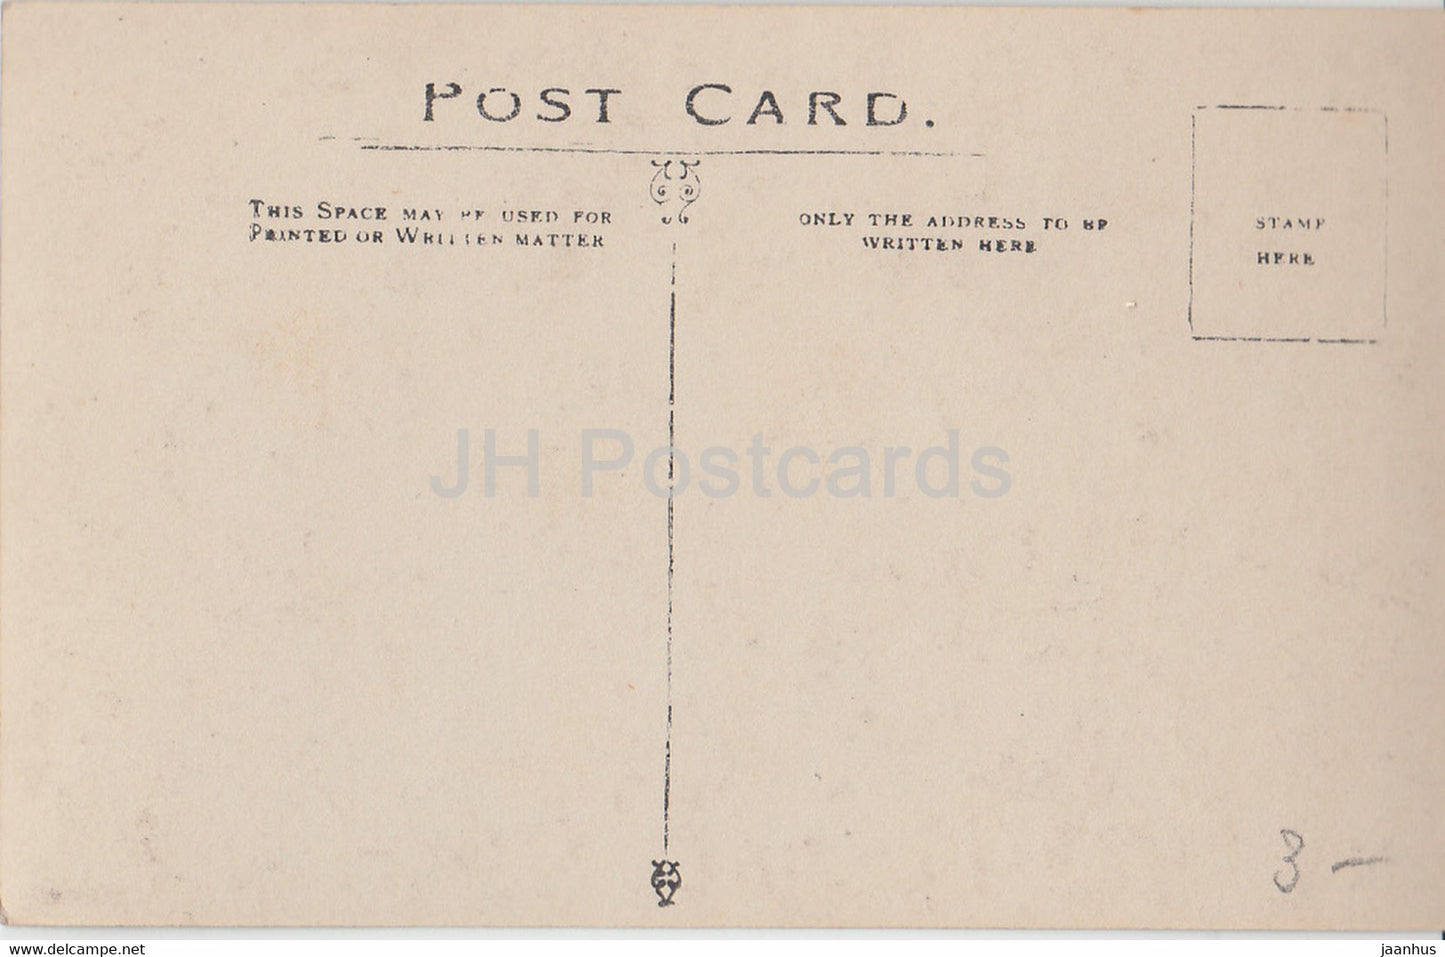 Wellington - Crescent Ramsgate - old postcard - England - United Kingdom - unused